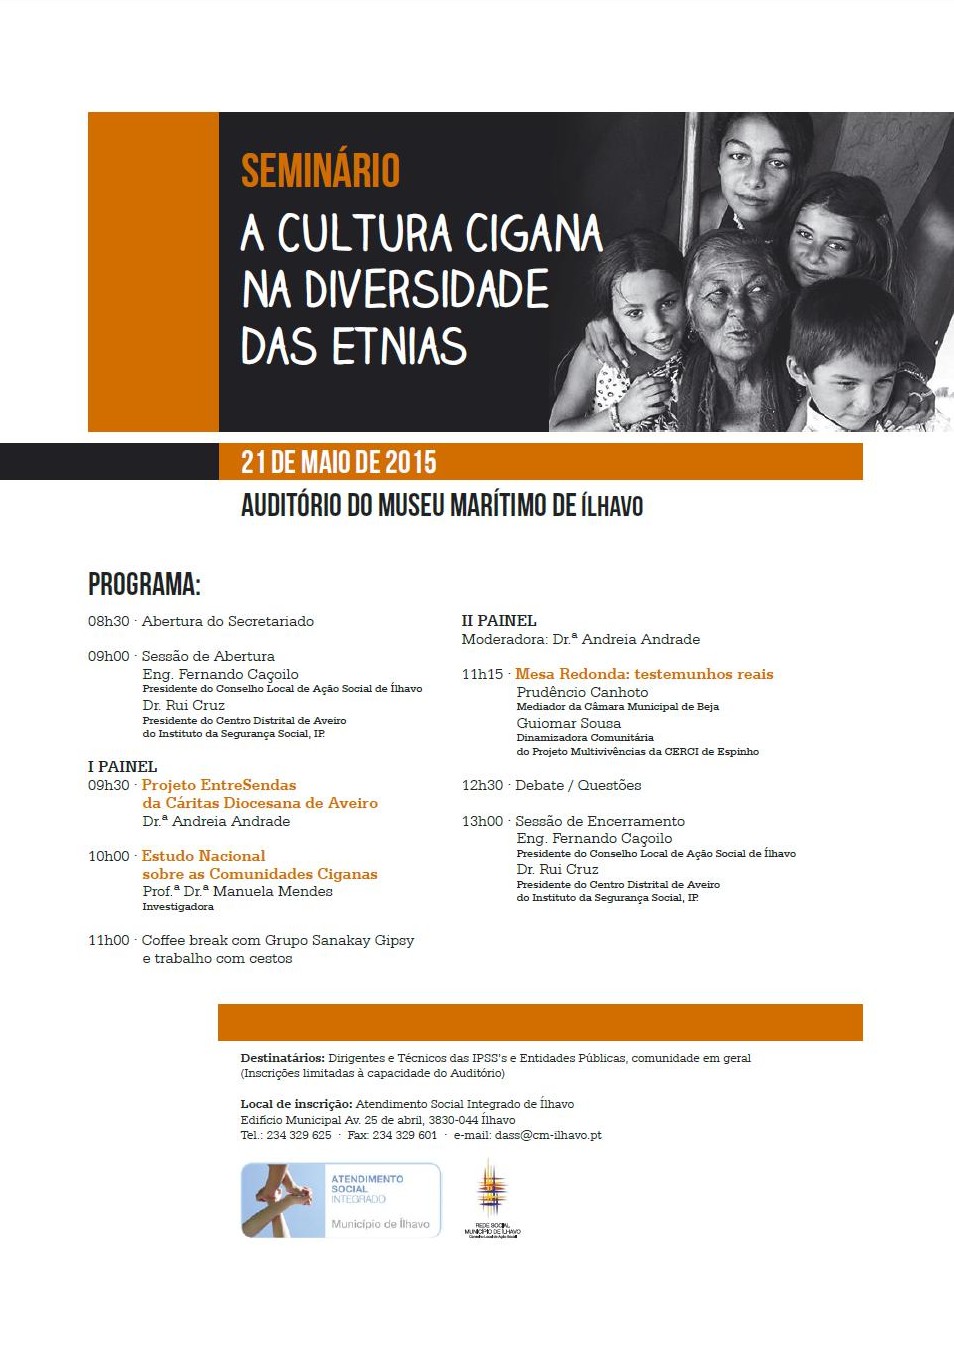 Seminário "A Cultura Cigana na Diversidade das Etnias"